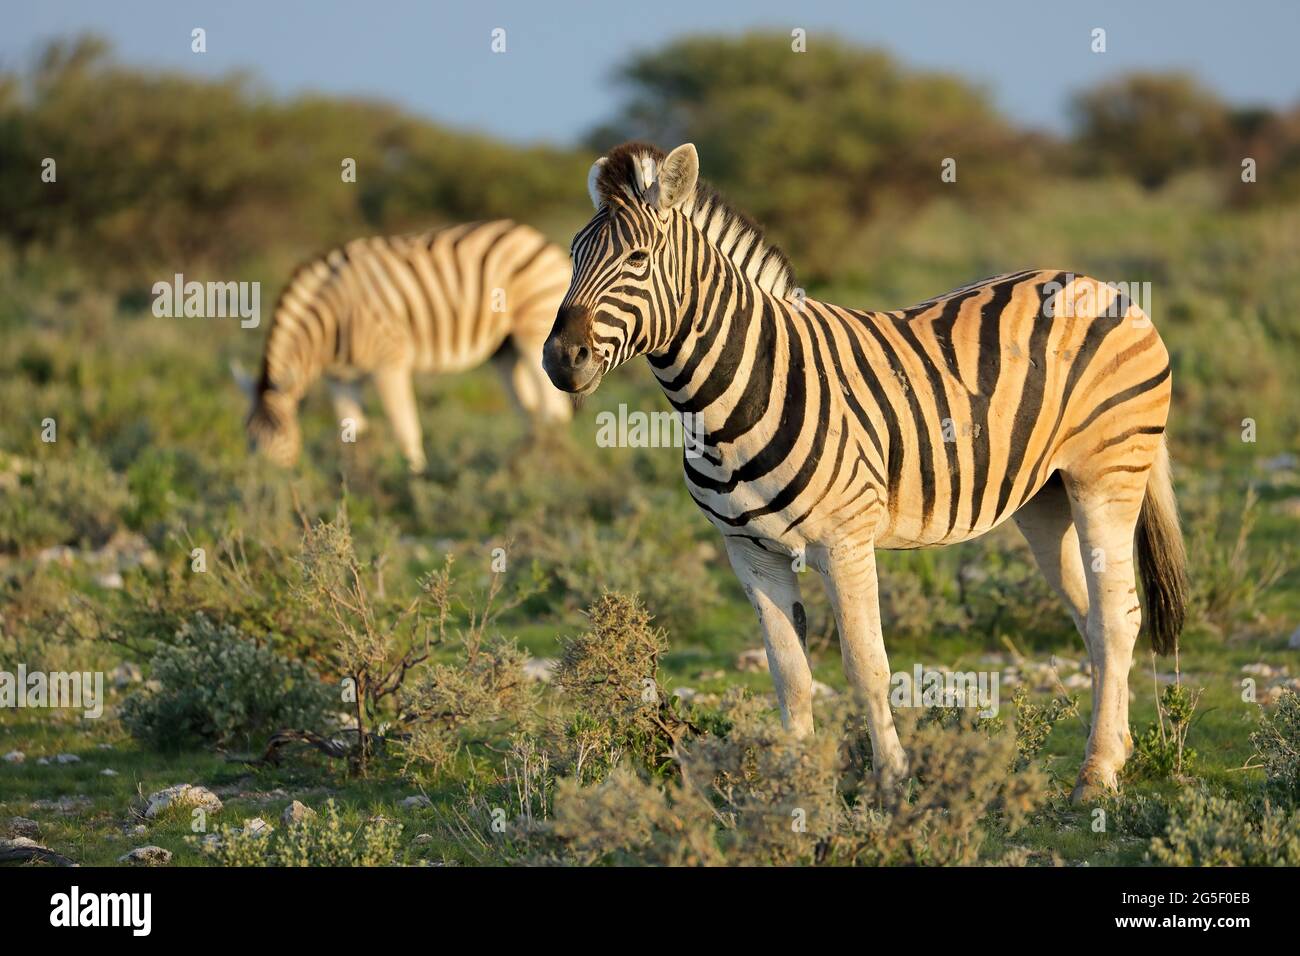 Llanuras cebras (Equus burchelli) en su hábitat natural, el Parque Nacional de Etosha, Namibia Foto de stock